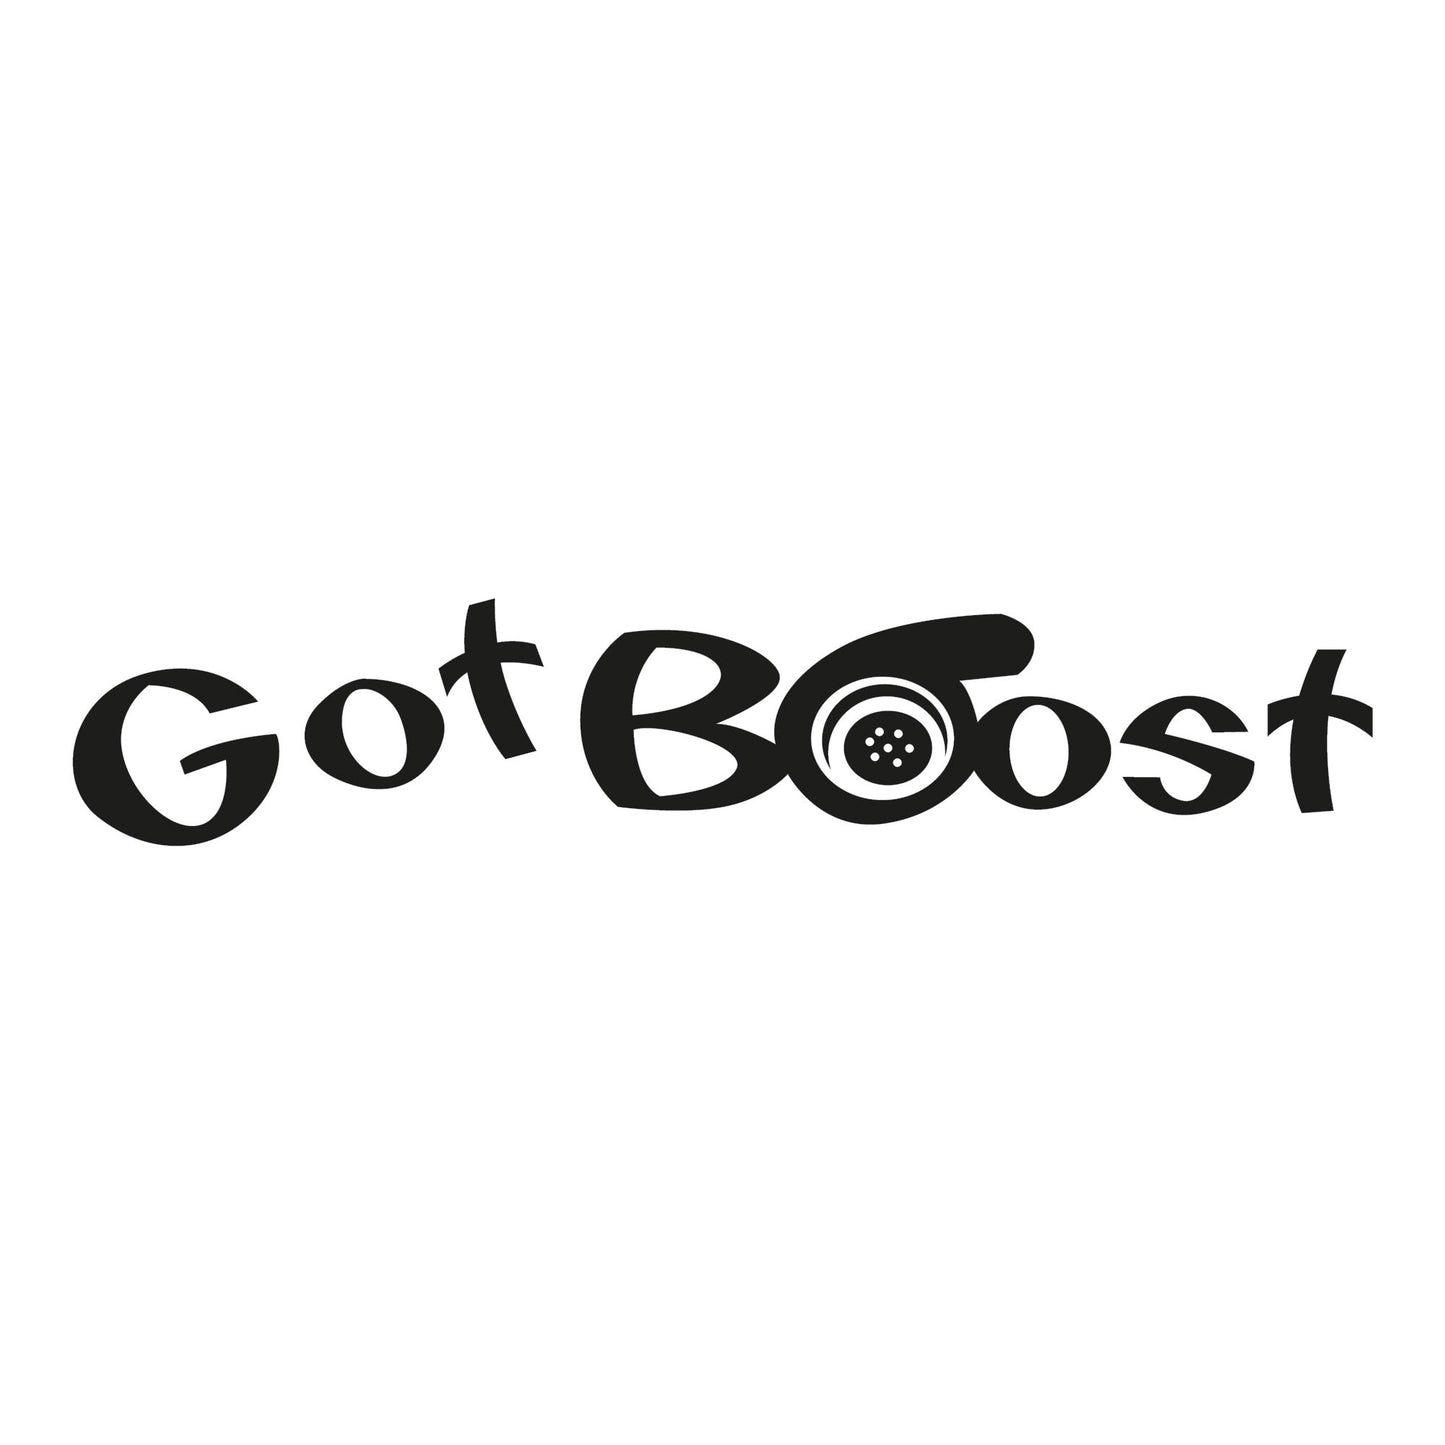 Autoaufkleber - Got Boost - 210x40 mm